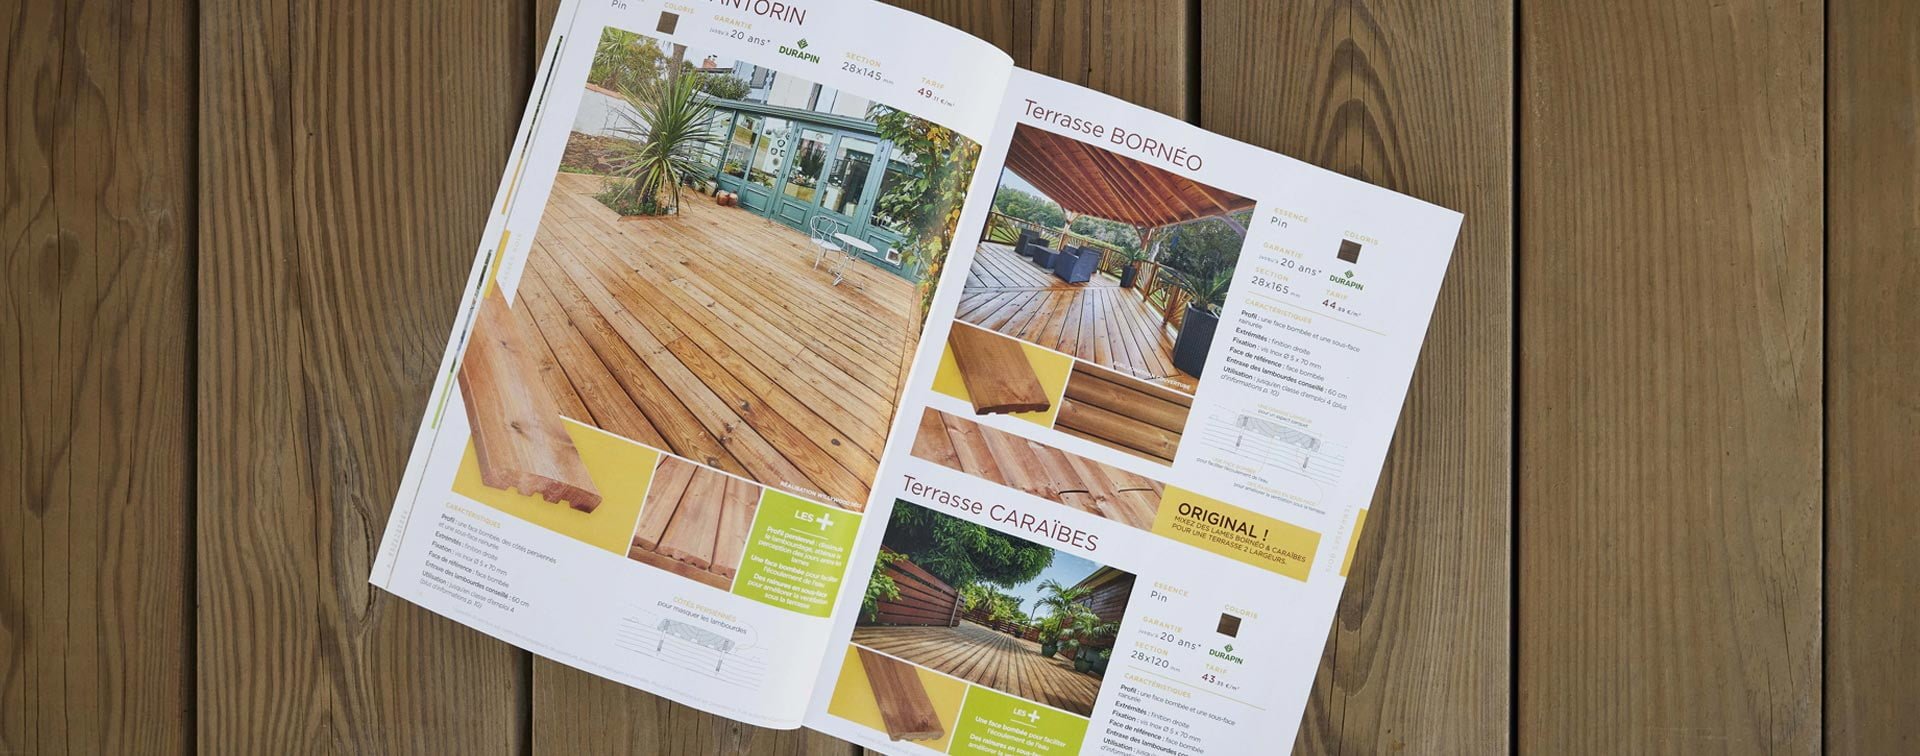 Découvrez notre catalogue d’inspiration présentant tous nos produits pour l’aménagement extérieur et la construction en bois !